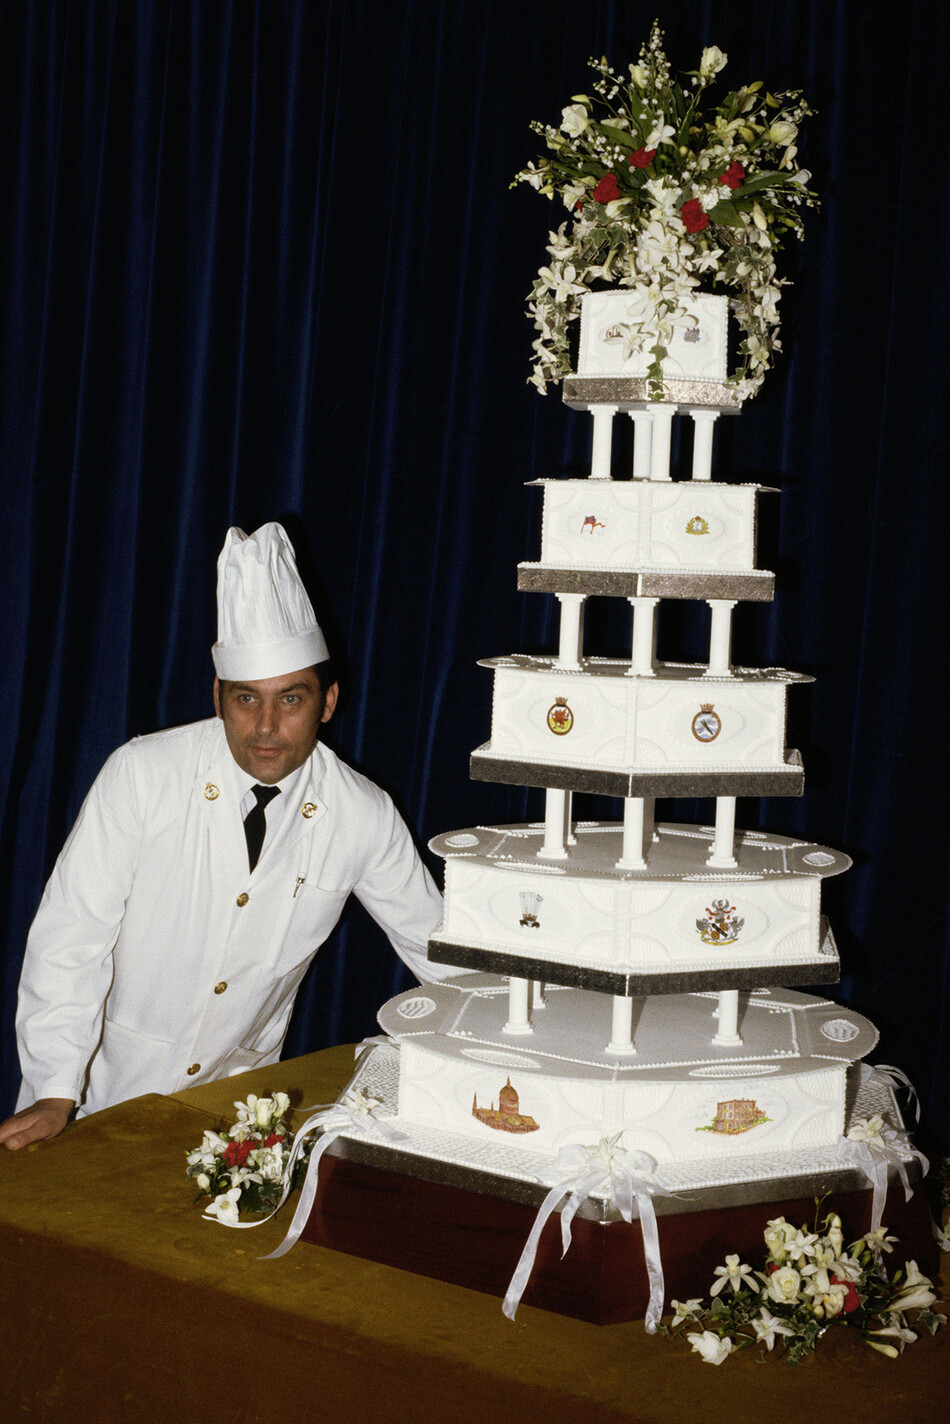 Бейкер Дэвид Эйвери позирует с королевским свадебным тортом. Это был один из 28 тортов, подаваемых на свадьбе.